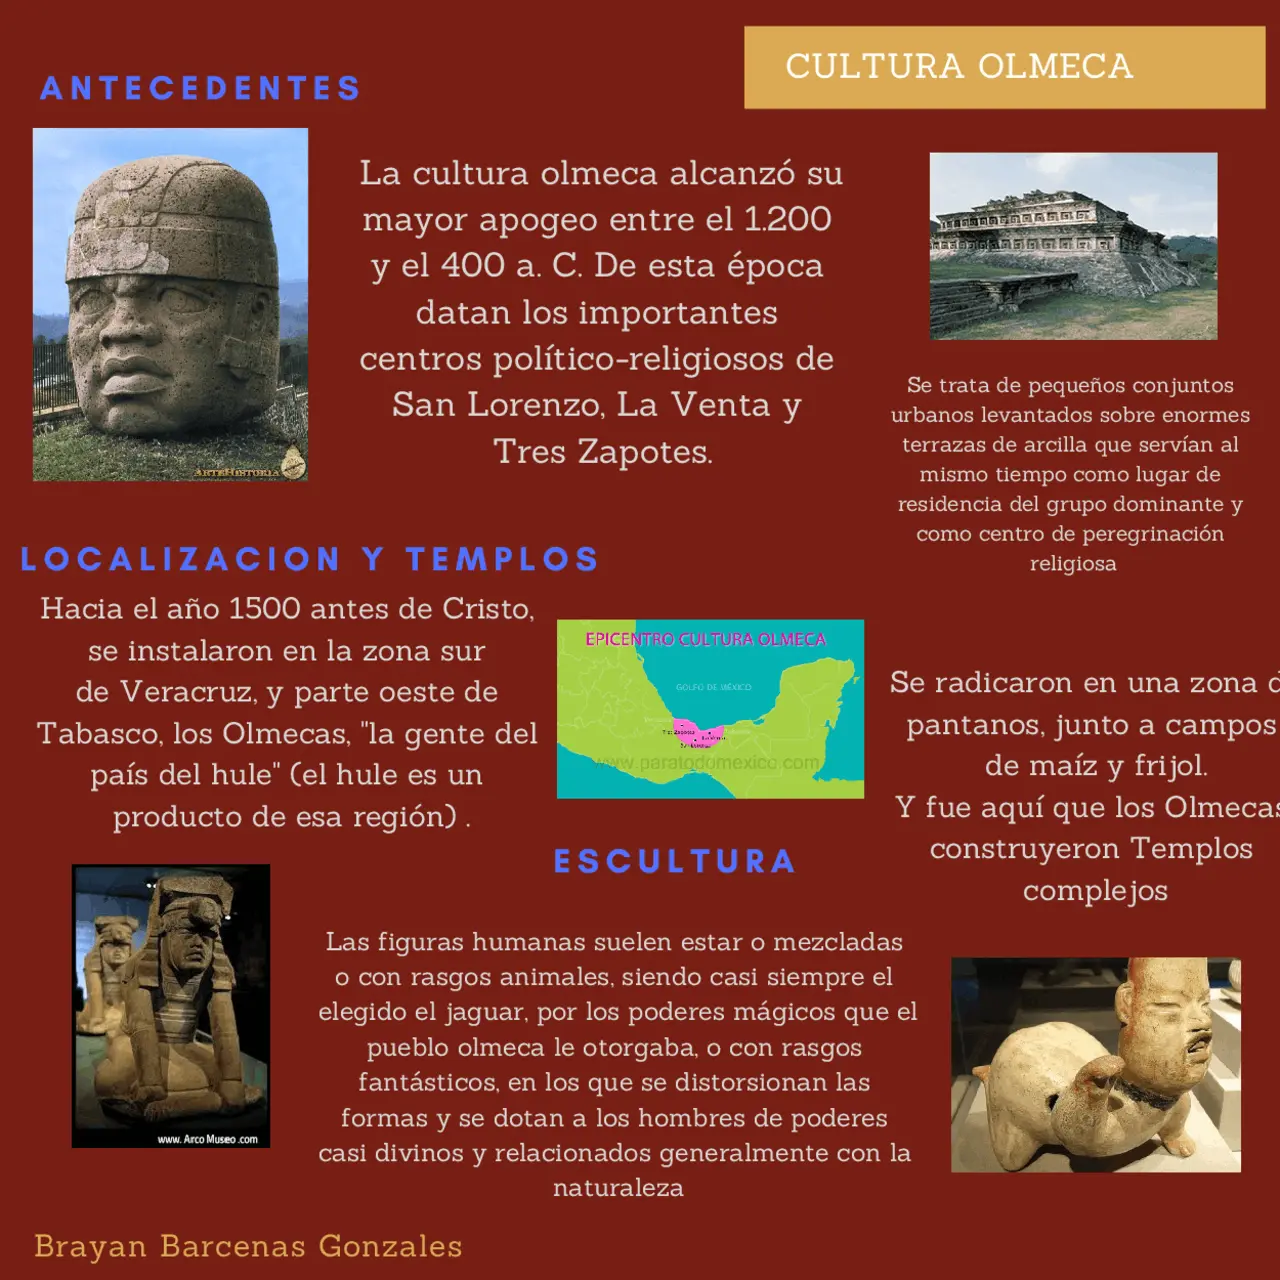 cultura olmeca resumen corto - Cuáles son las características de la cultura olmeca